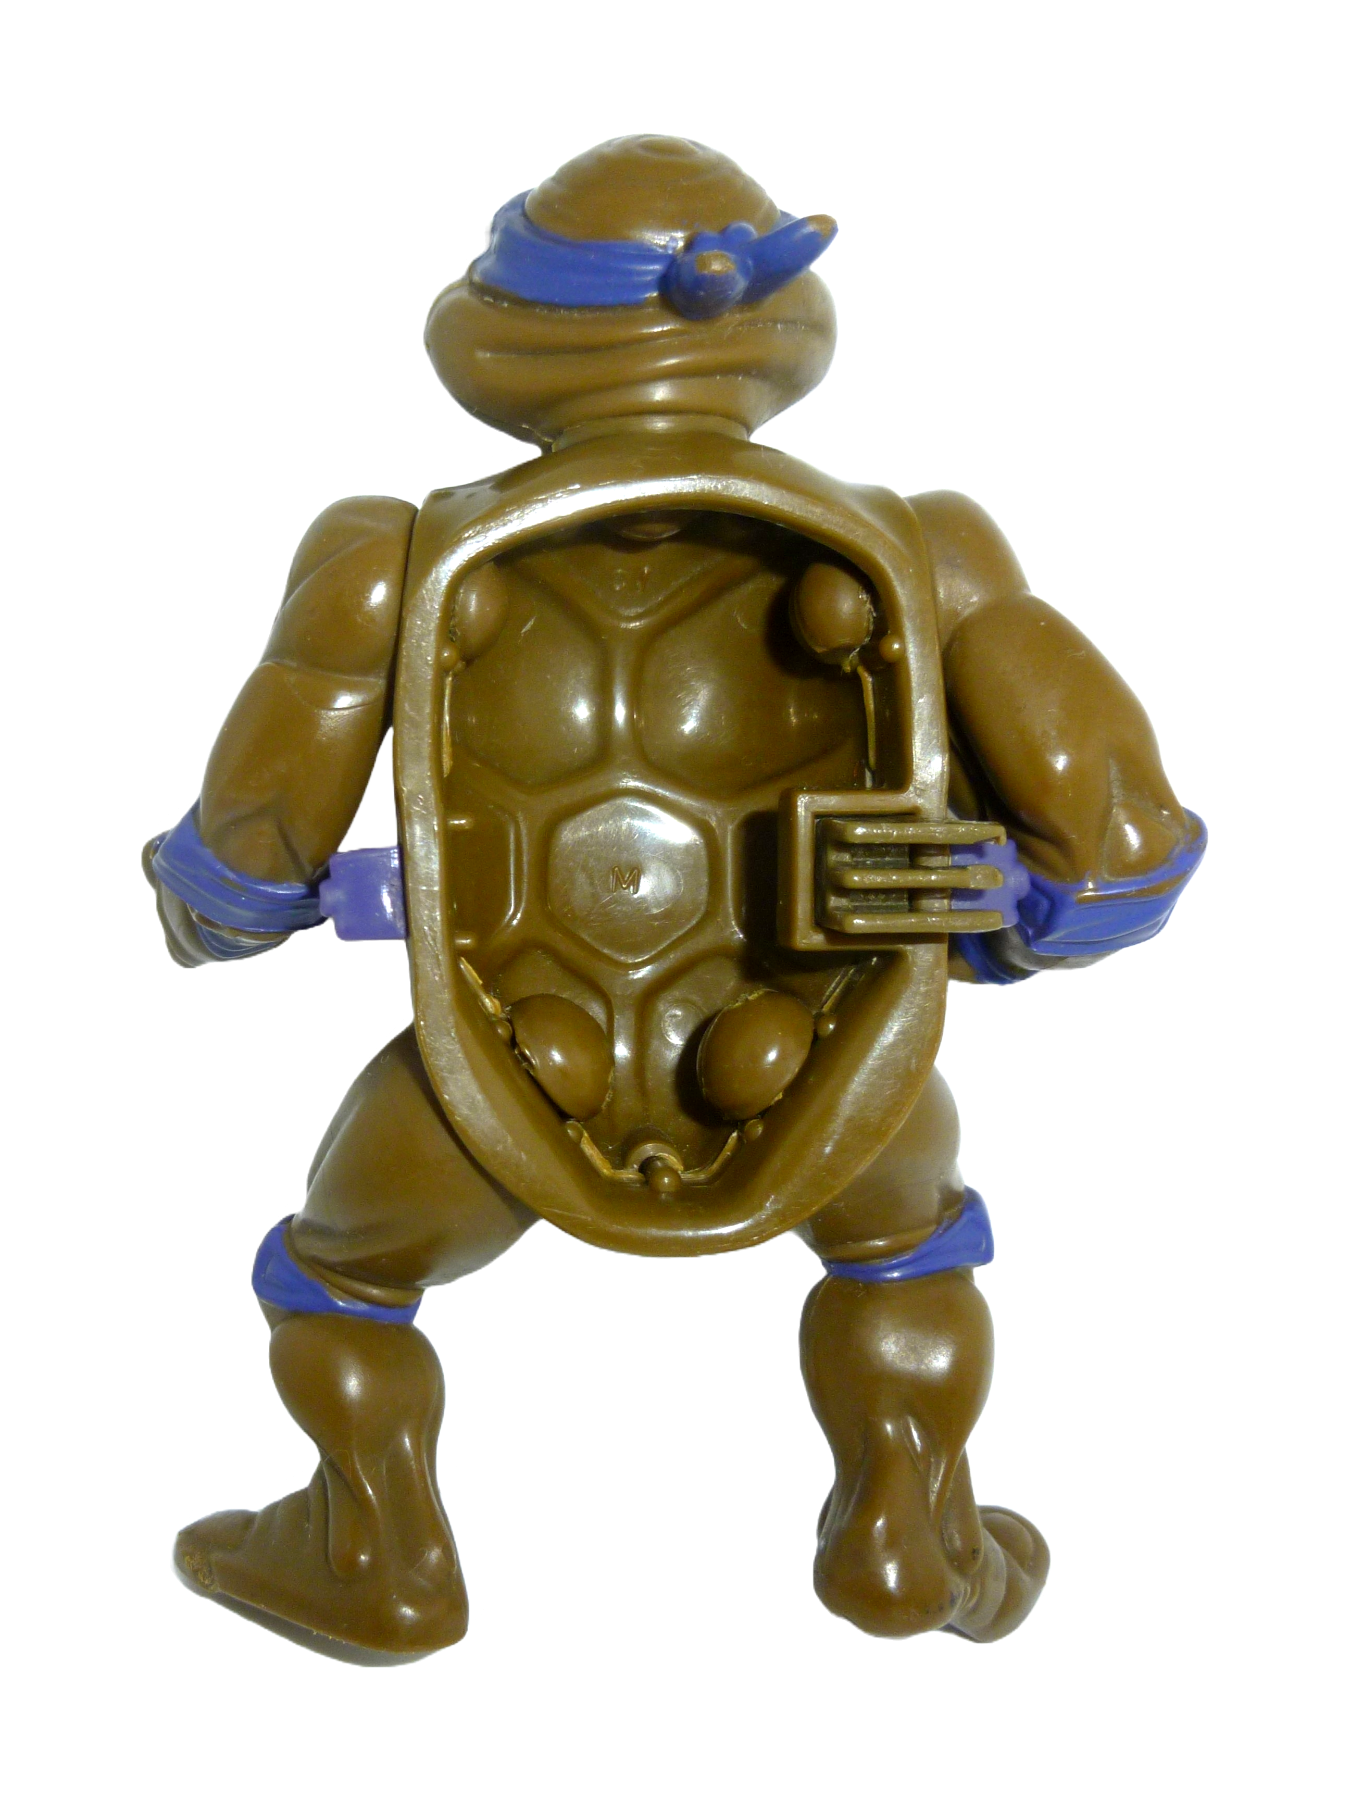 Donatello With Storage Shell - defekt 1990 Mirage Studios / Playmates Toys 2